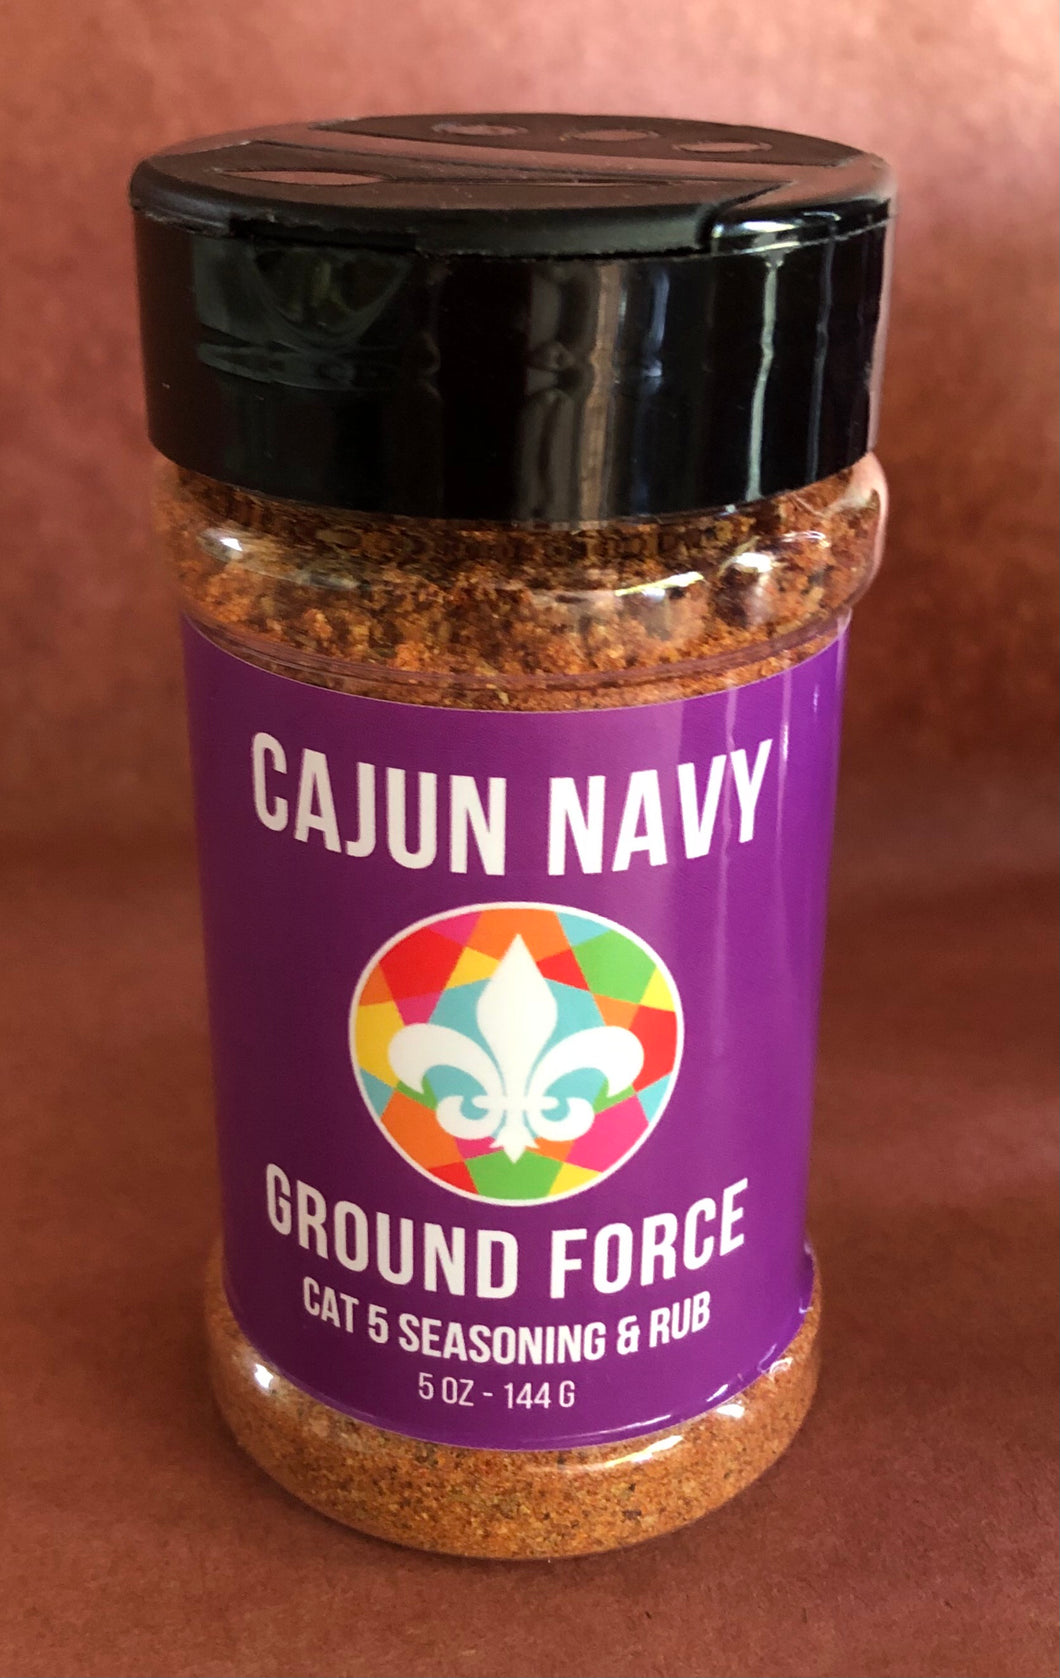 Cajun Navy Cat 5 Seasoning and Rub